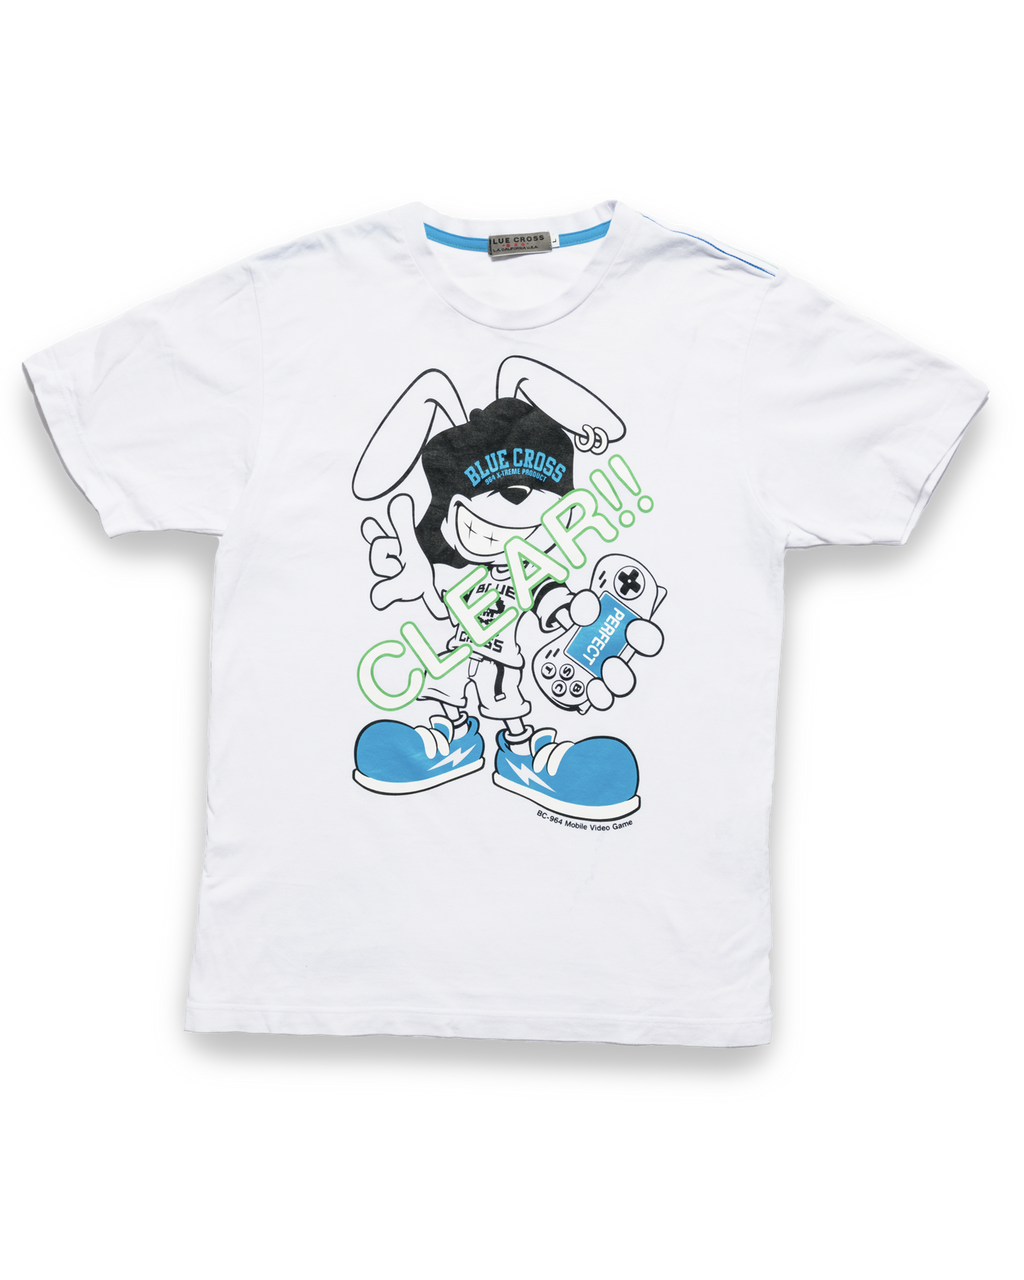 Blue Cross Character Shirt